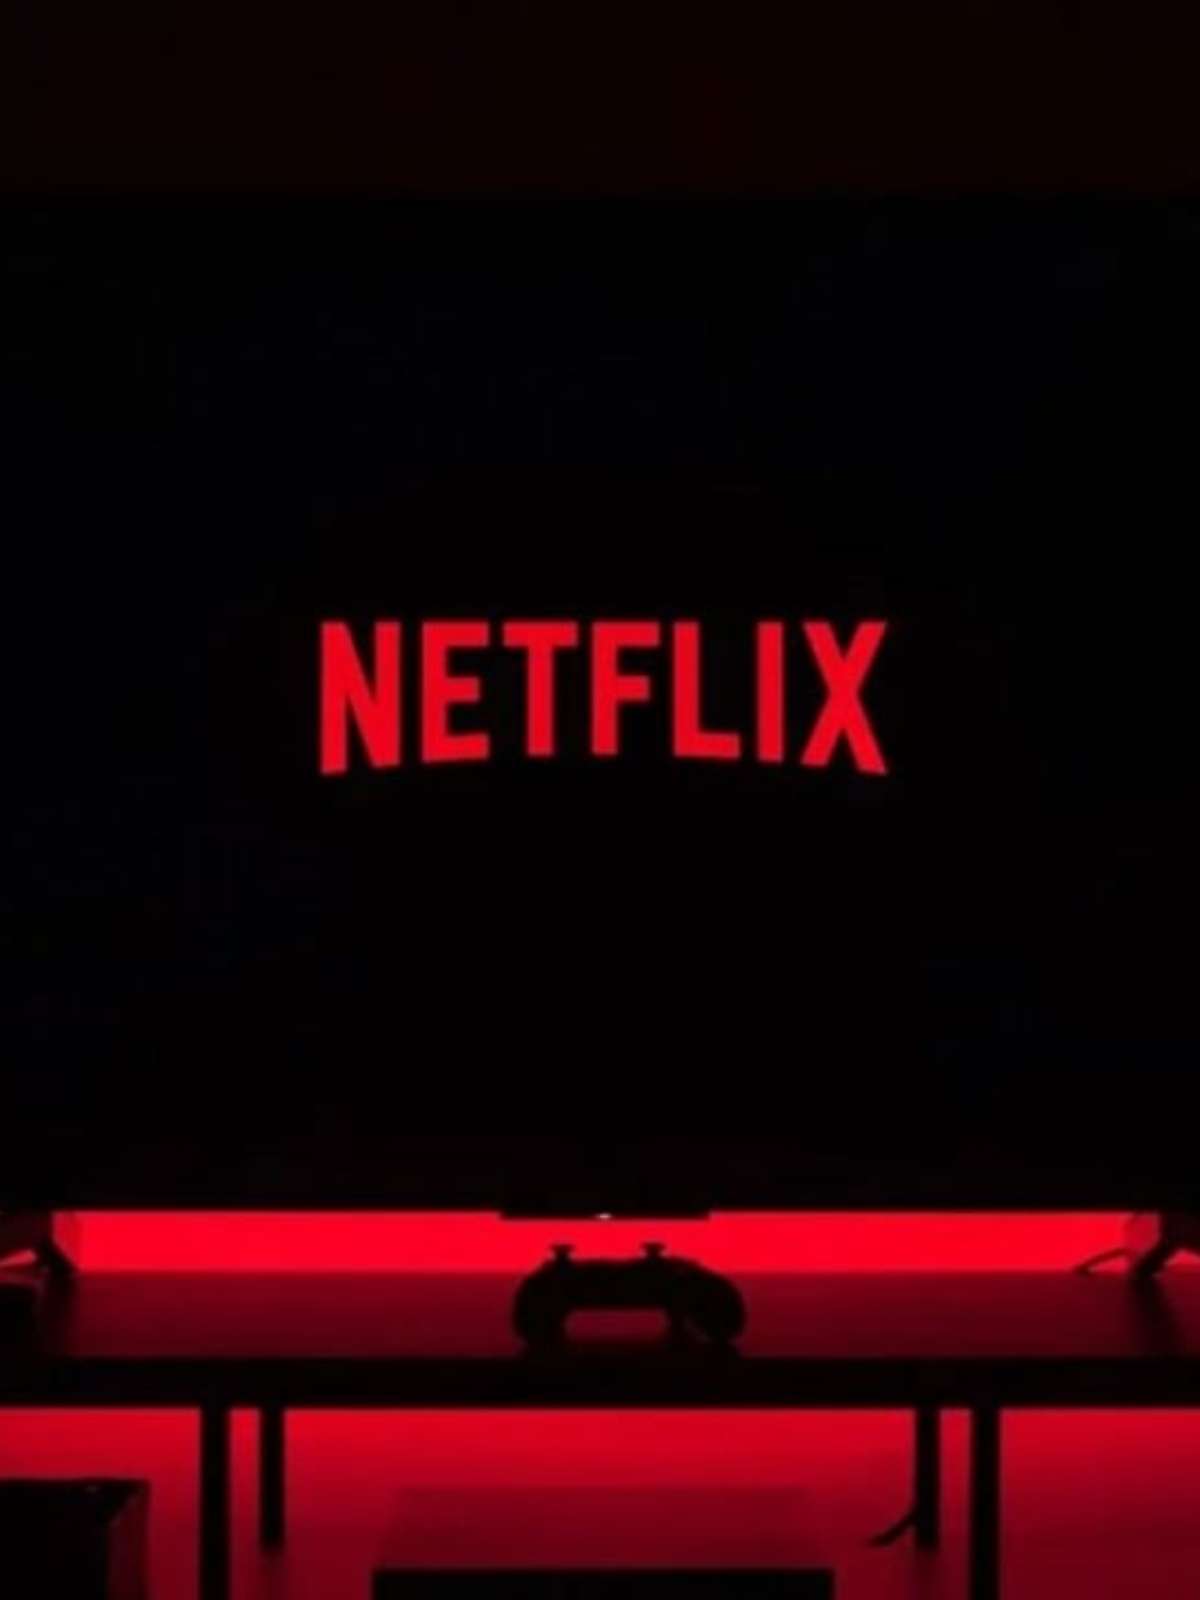 Netflix grátis em 2020: site libera filmes e séries para assistir